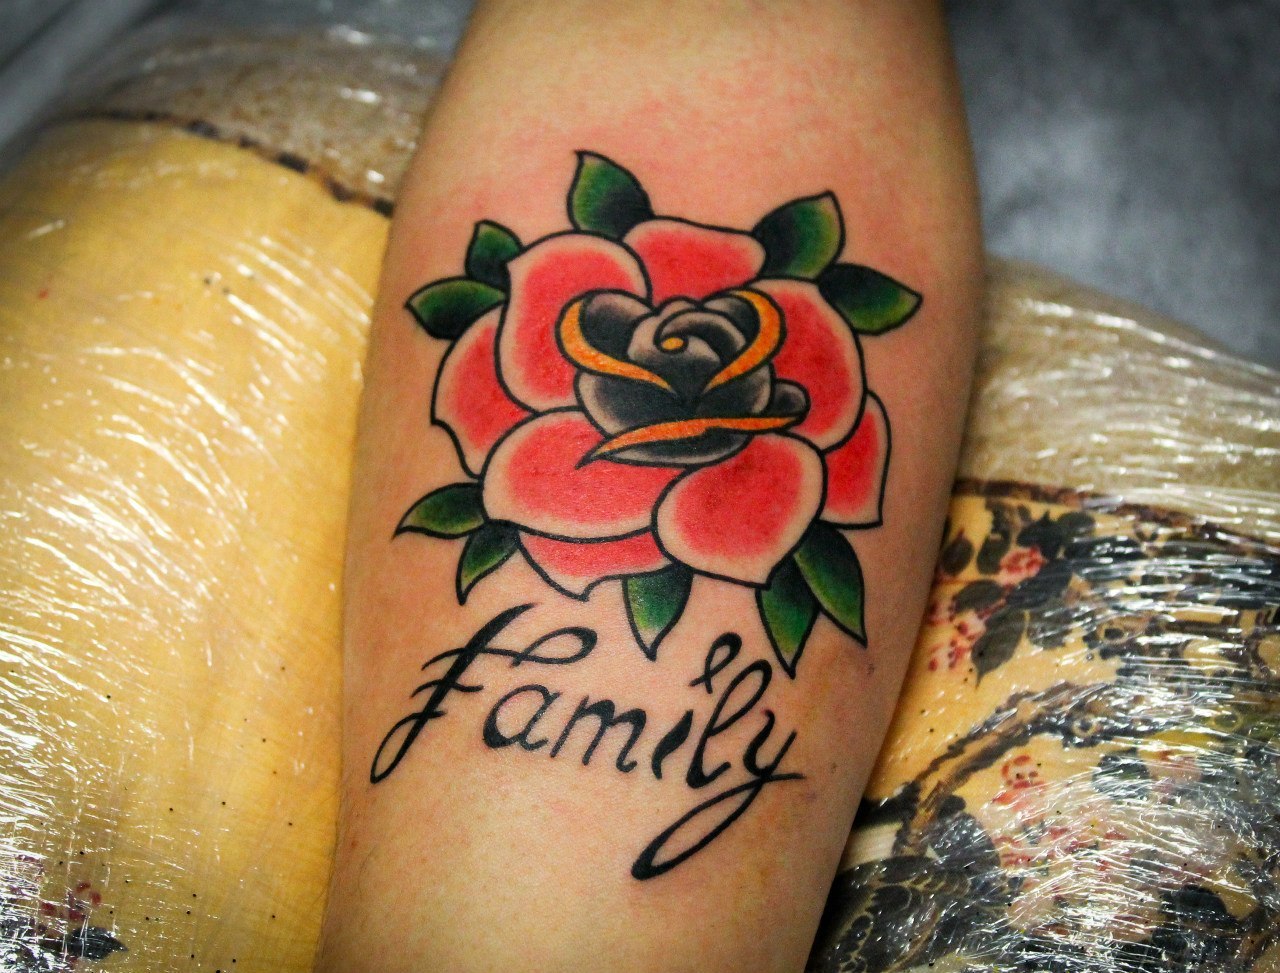 Художественная татуировка "Роза". С надписью "Family". Мастер Денис Марахин.